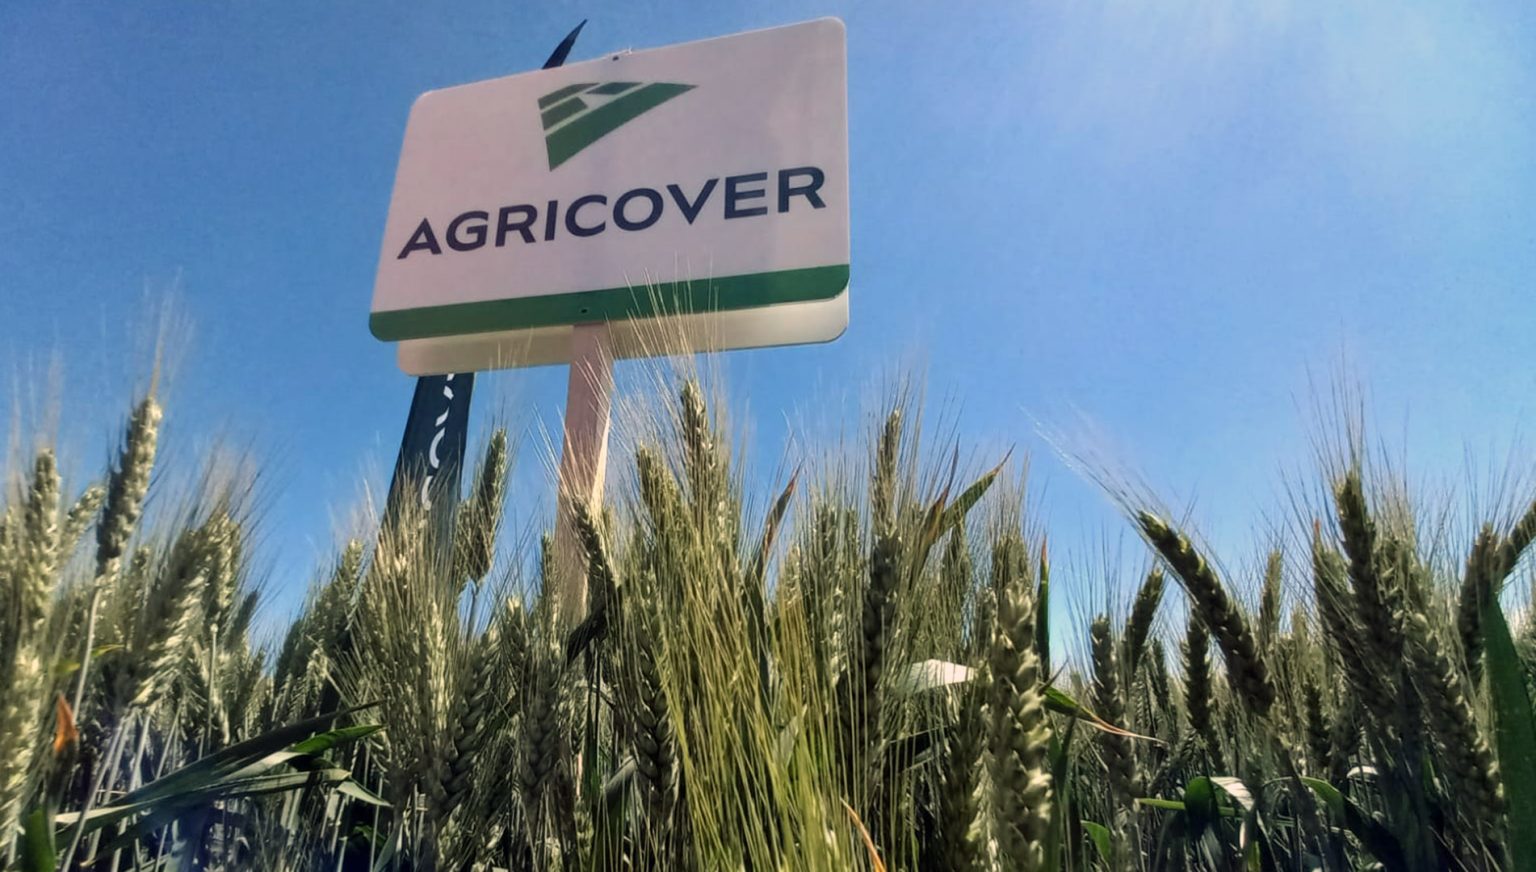 Bursă. Agricover Holding, cu BERD în acţionariat, vrea să dea acţionarilor dividende de 30 mil. lei din profiturile nedistribuite din anii anteriori